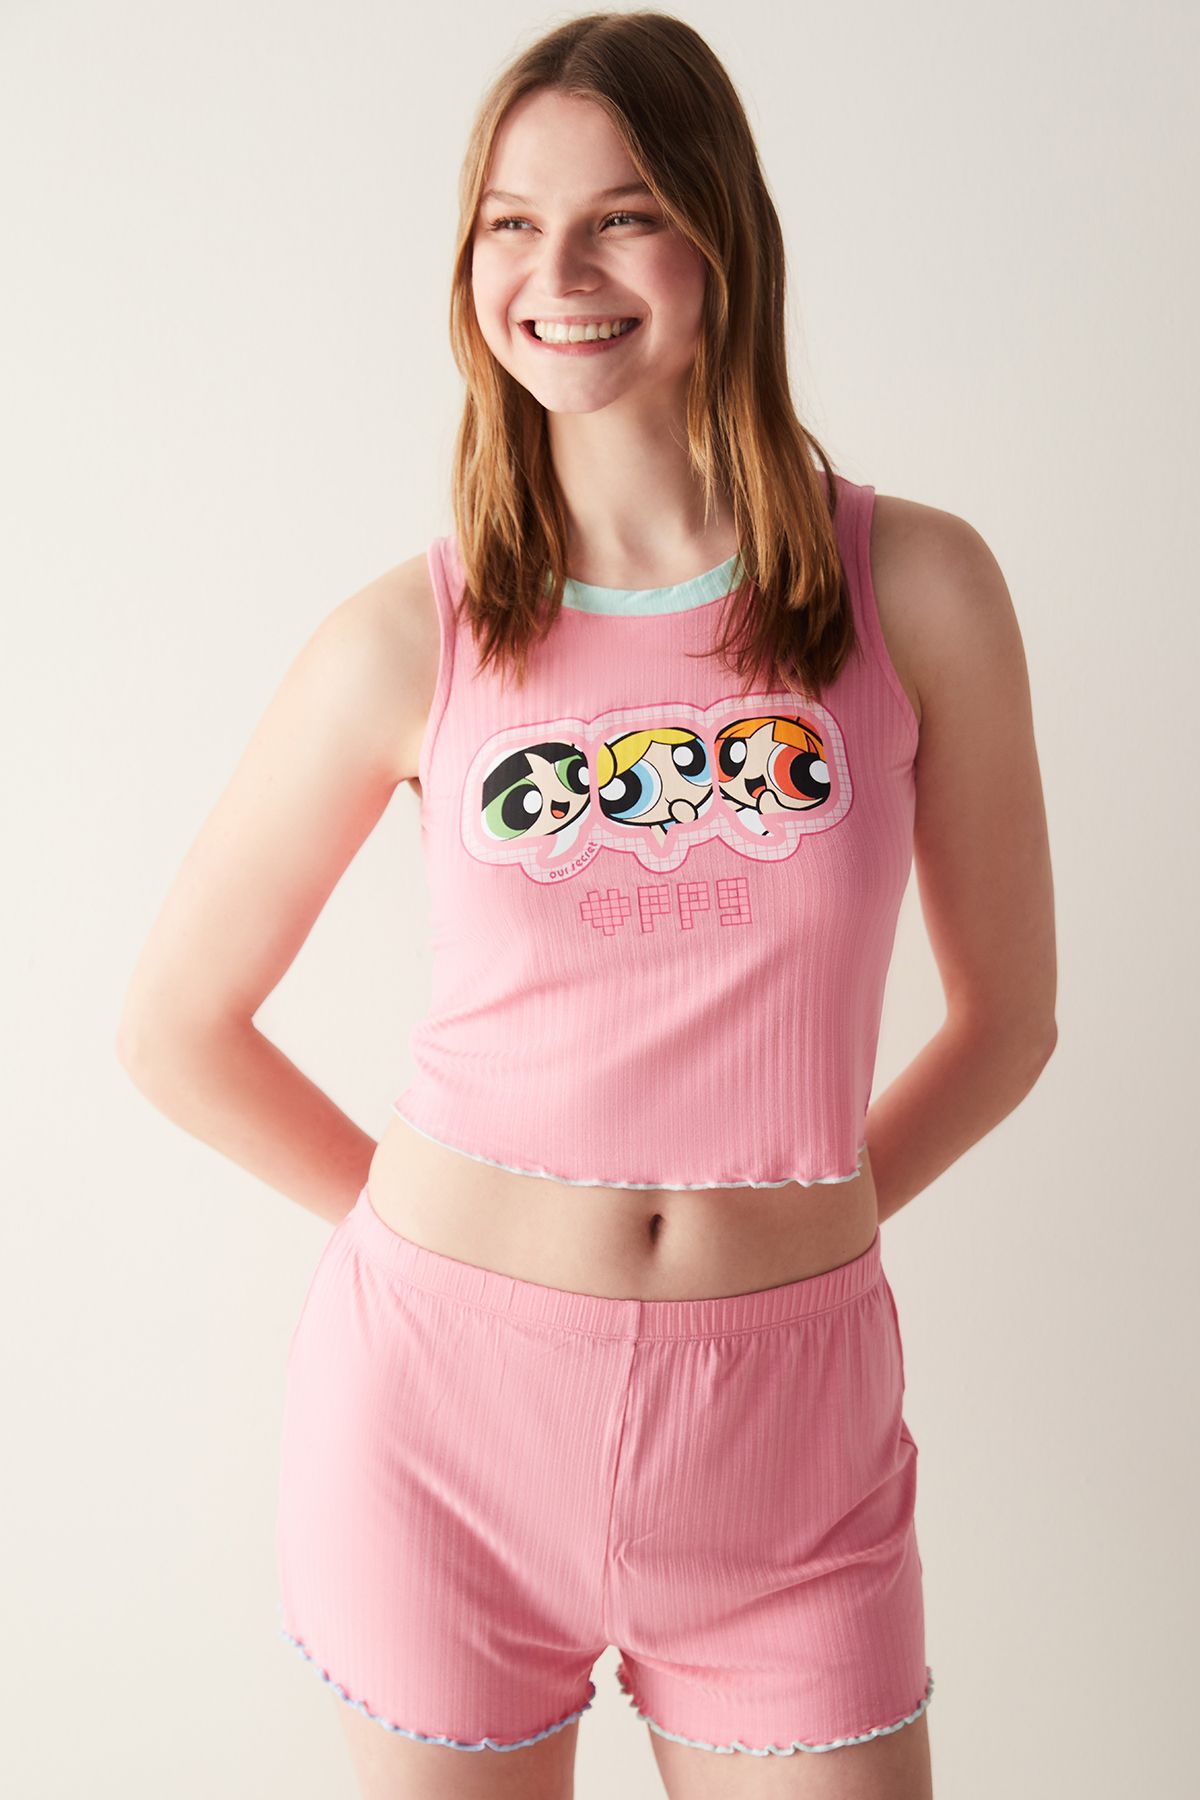 Penti Pembe Atlet Pijama Üstü - Powerpuff Girls Koleksiyonu